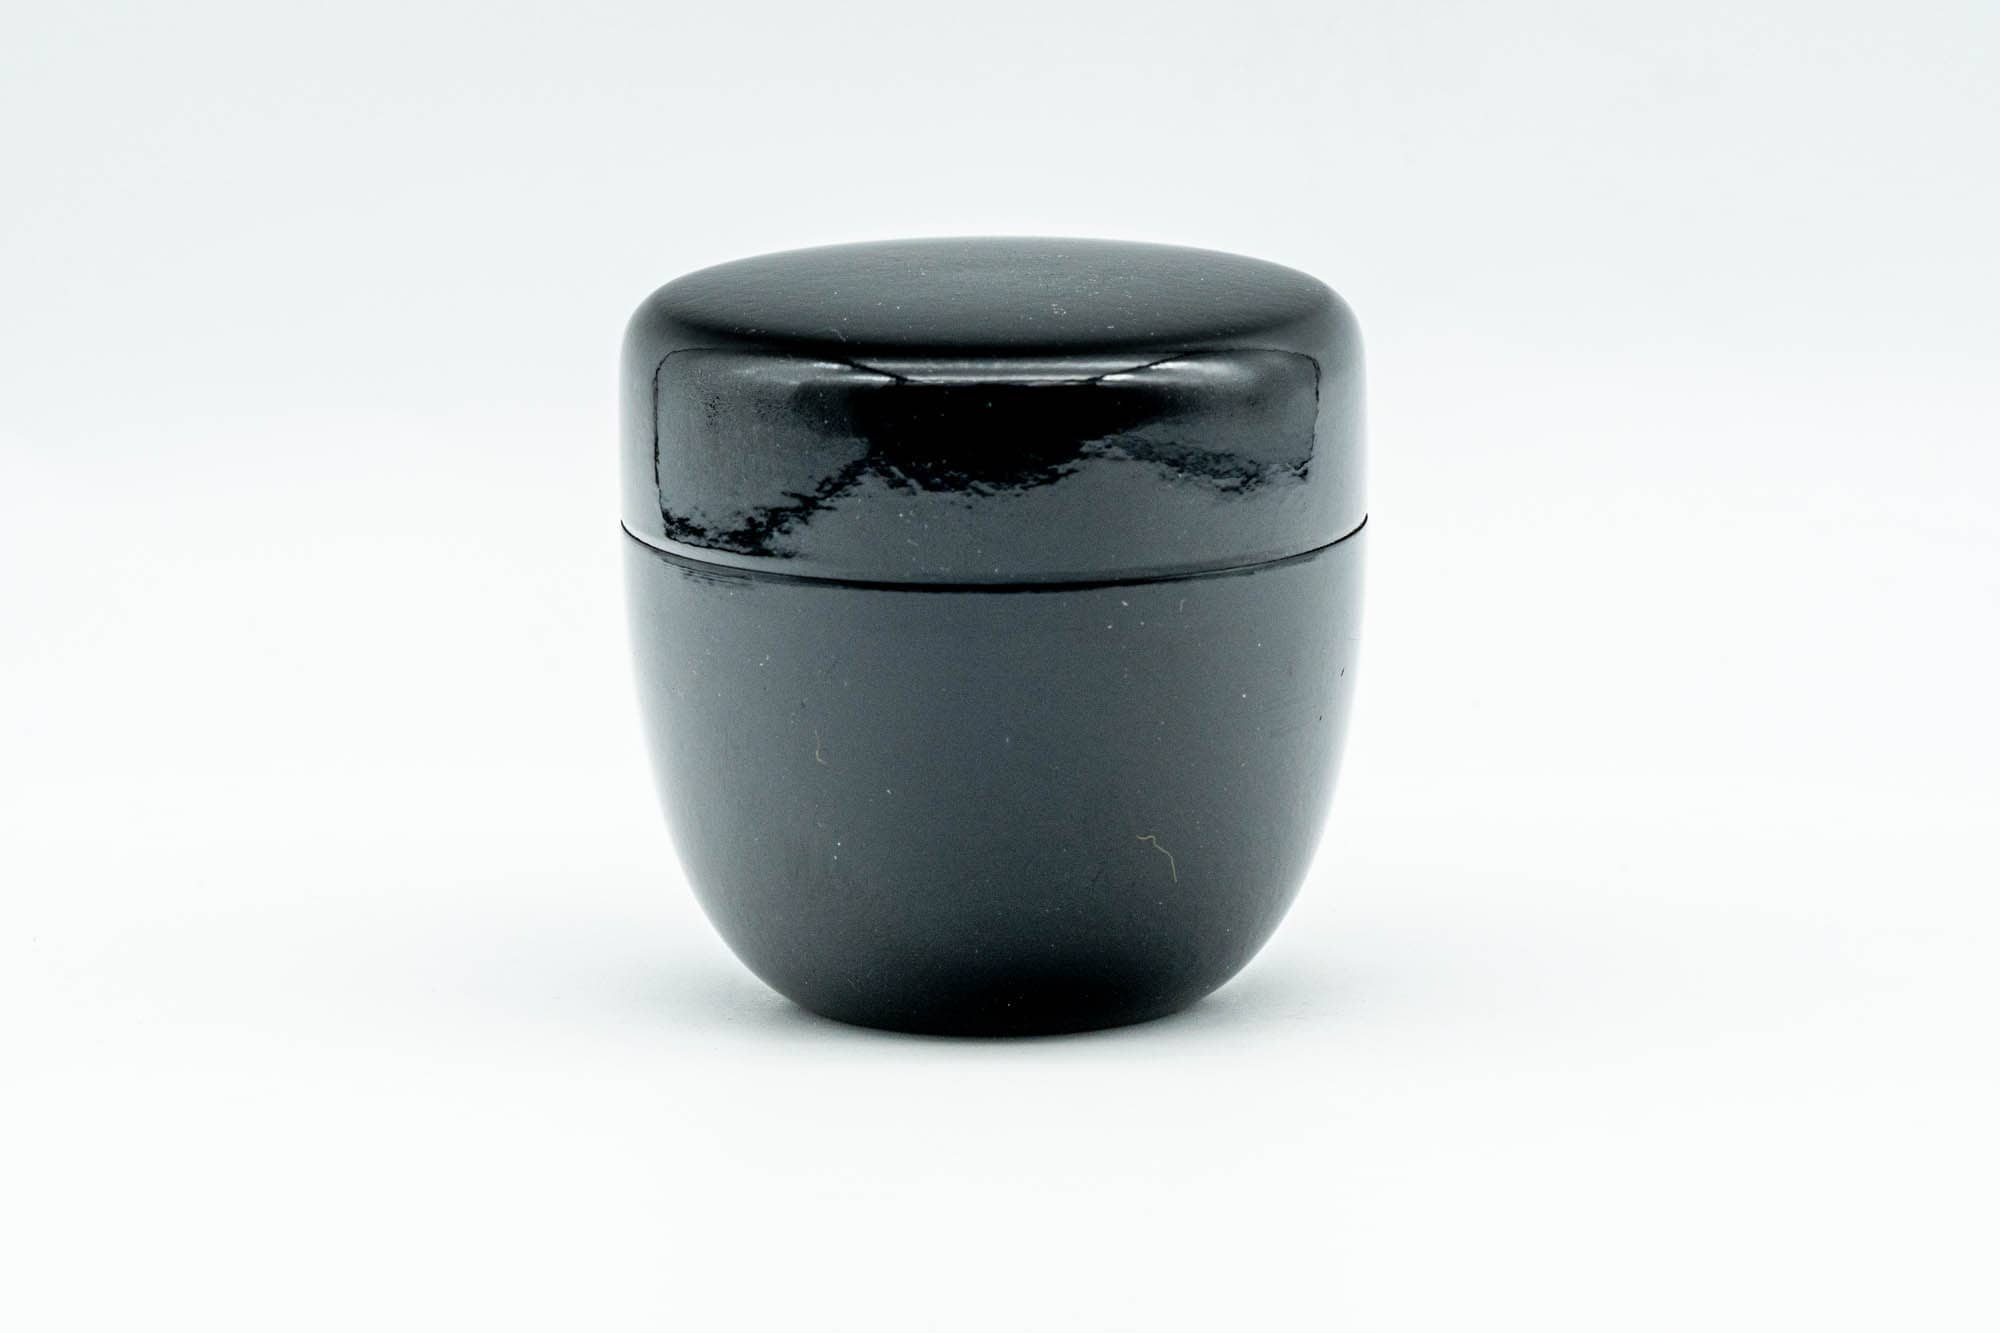 Japanese Natsume - Small Black Lacquer Matcha Tea Caddy - Ko-natsume - 50ml